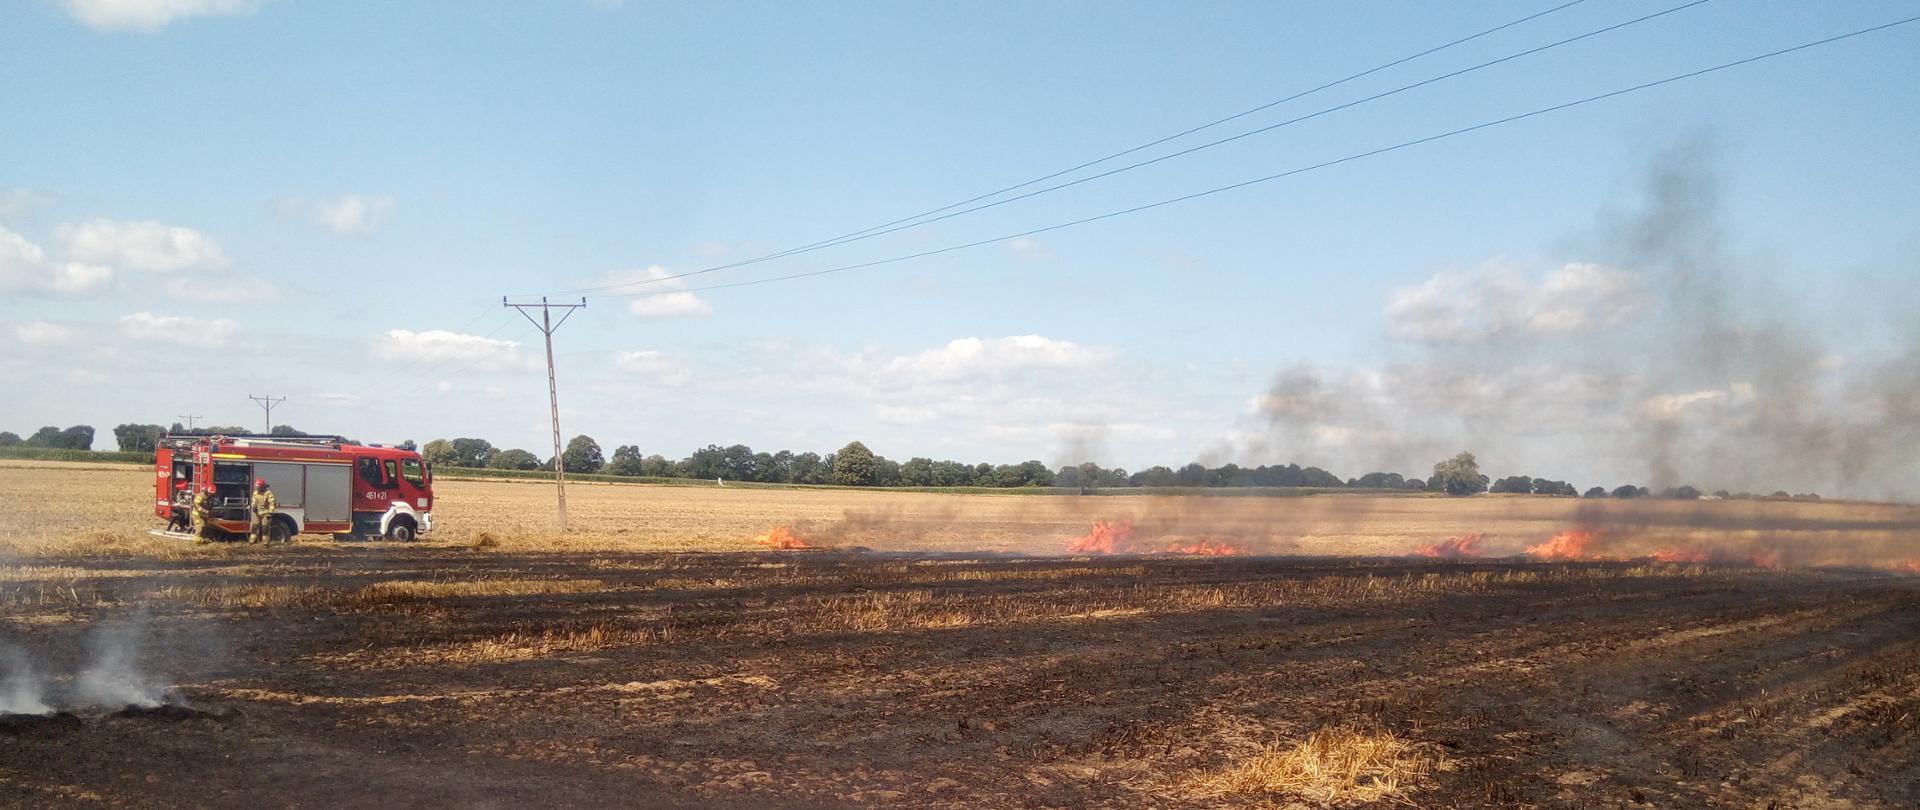 Zdjęcie przedstawia palące się ściernisko, w tle widać pojazd straży pożarnej.